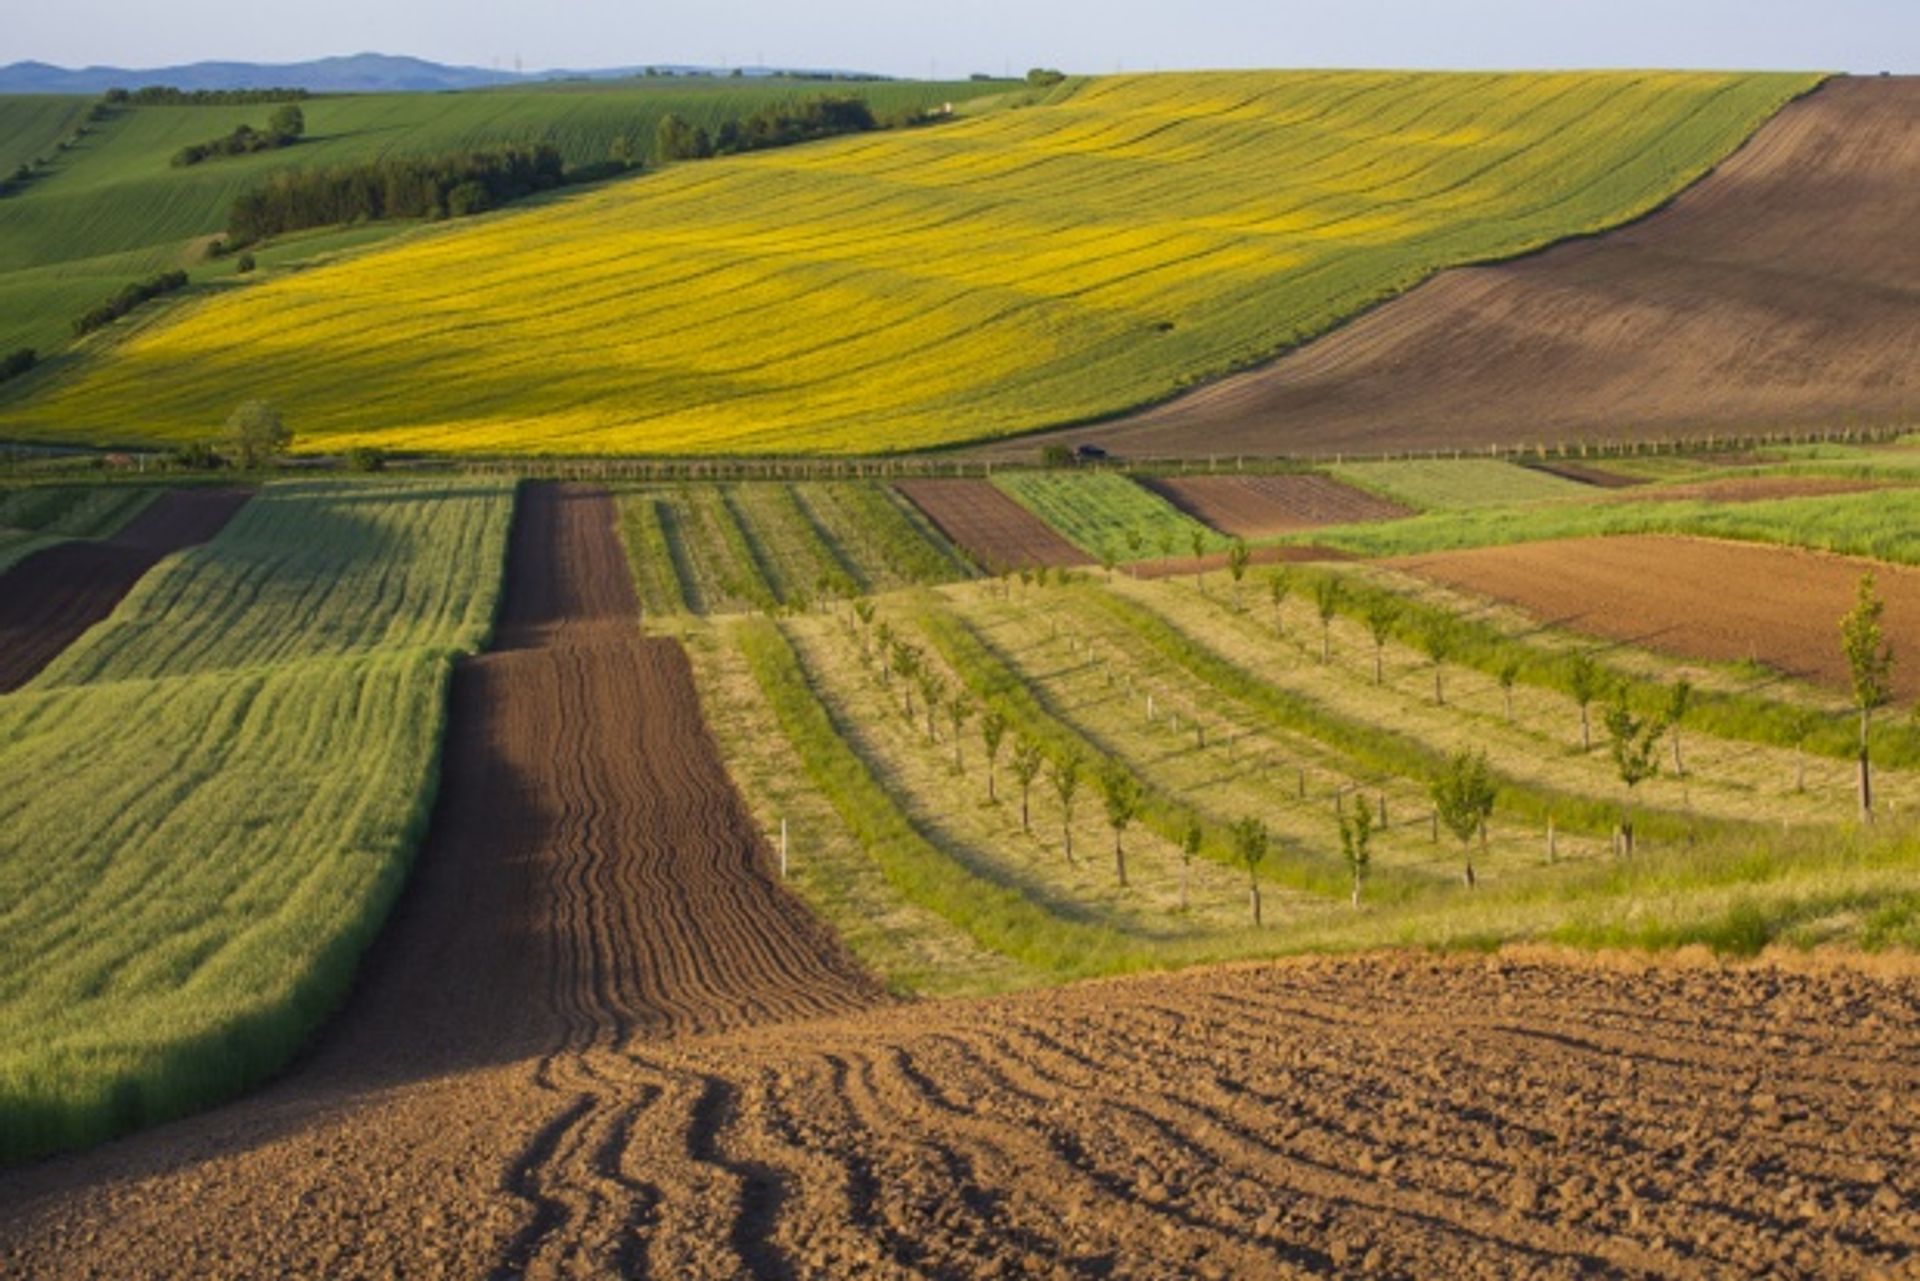  Obrót gruntami rolnymi: niemiecki rolnik może kupić polską ziemię